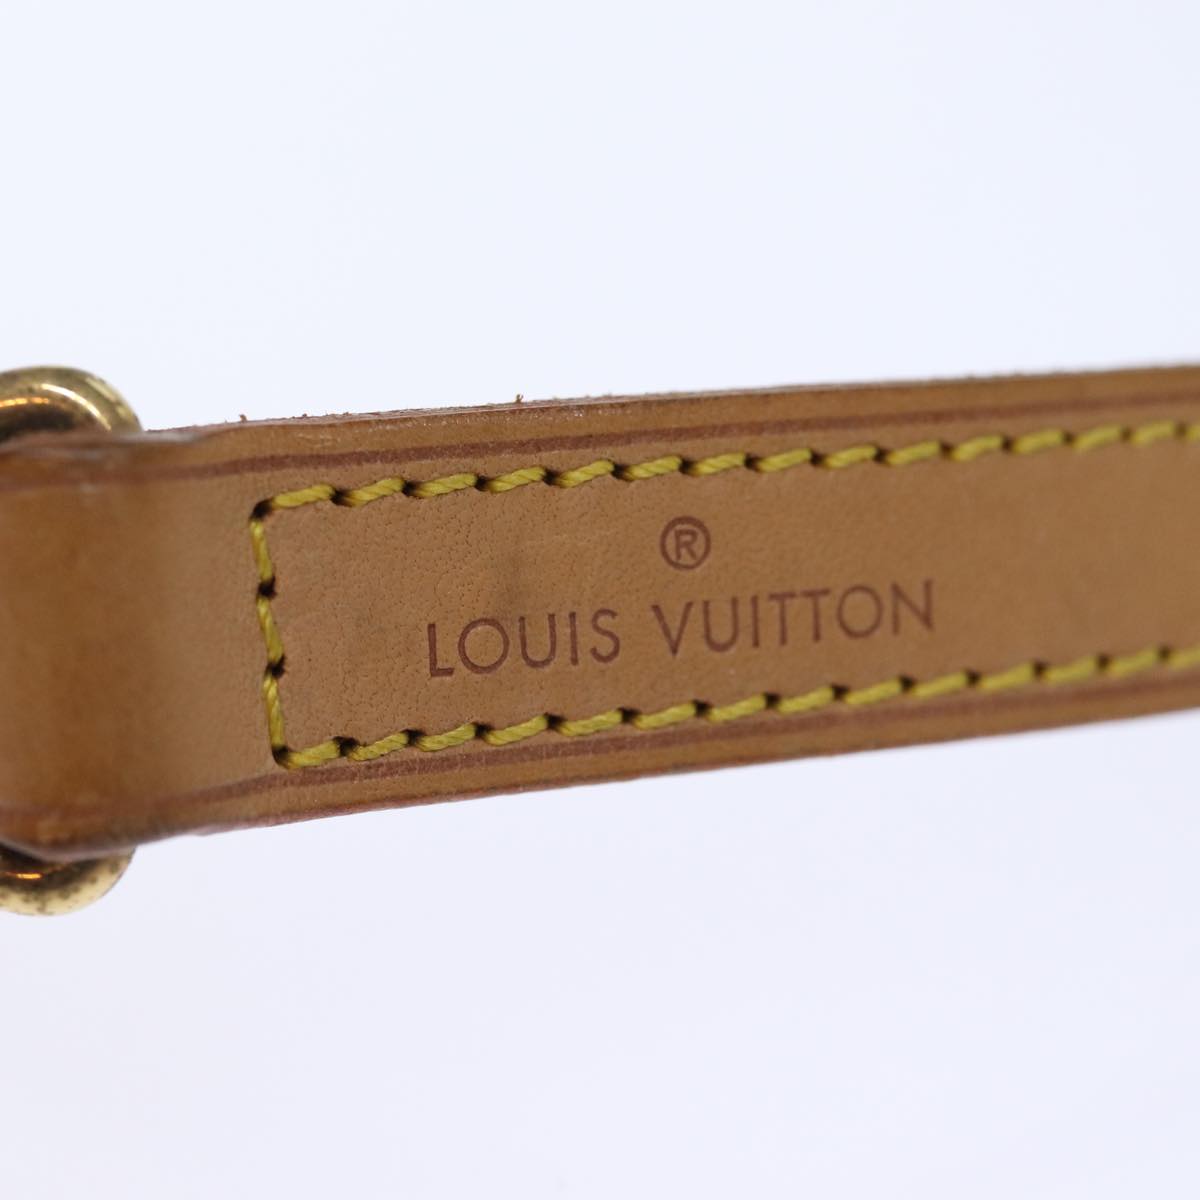 LOUIS VUITTON Shoulder Strap Leather 35.4"" Beige LV Auth 72130